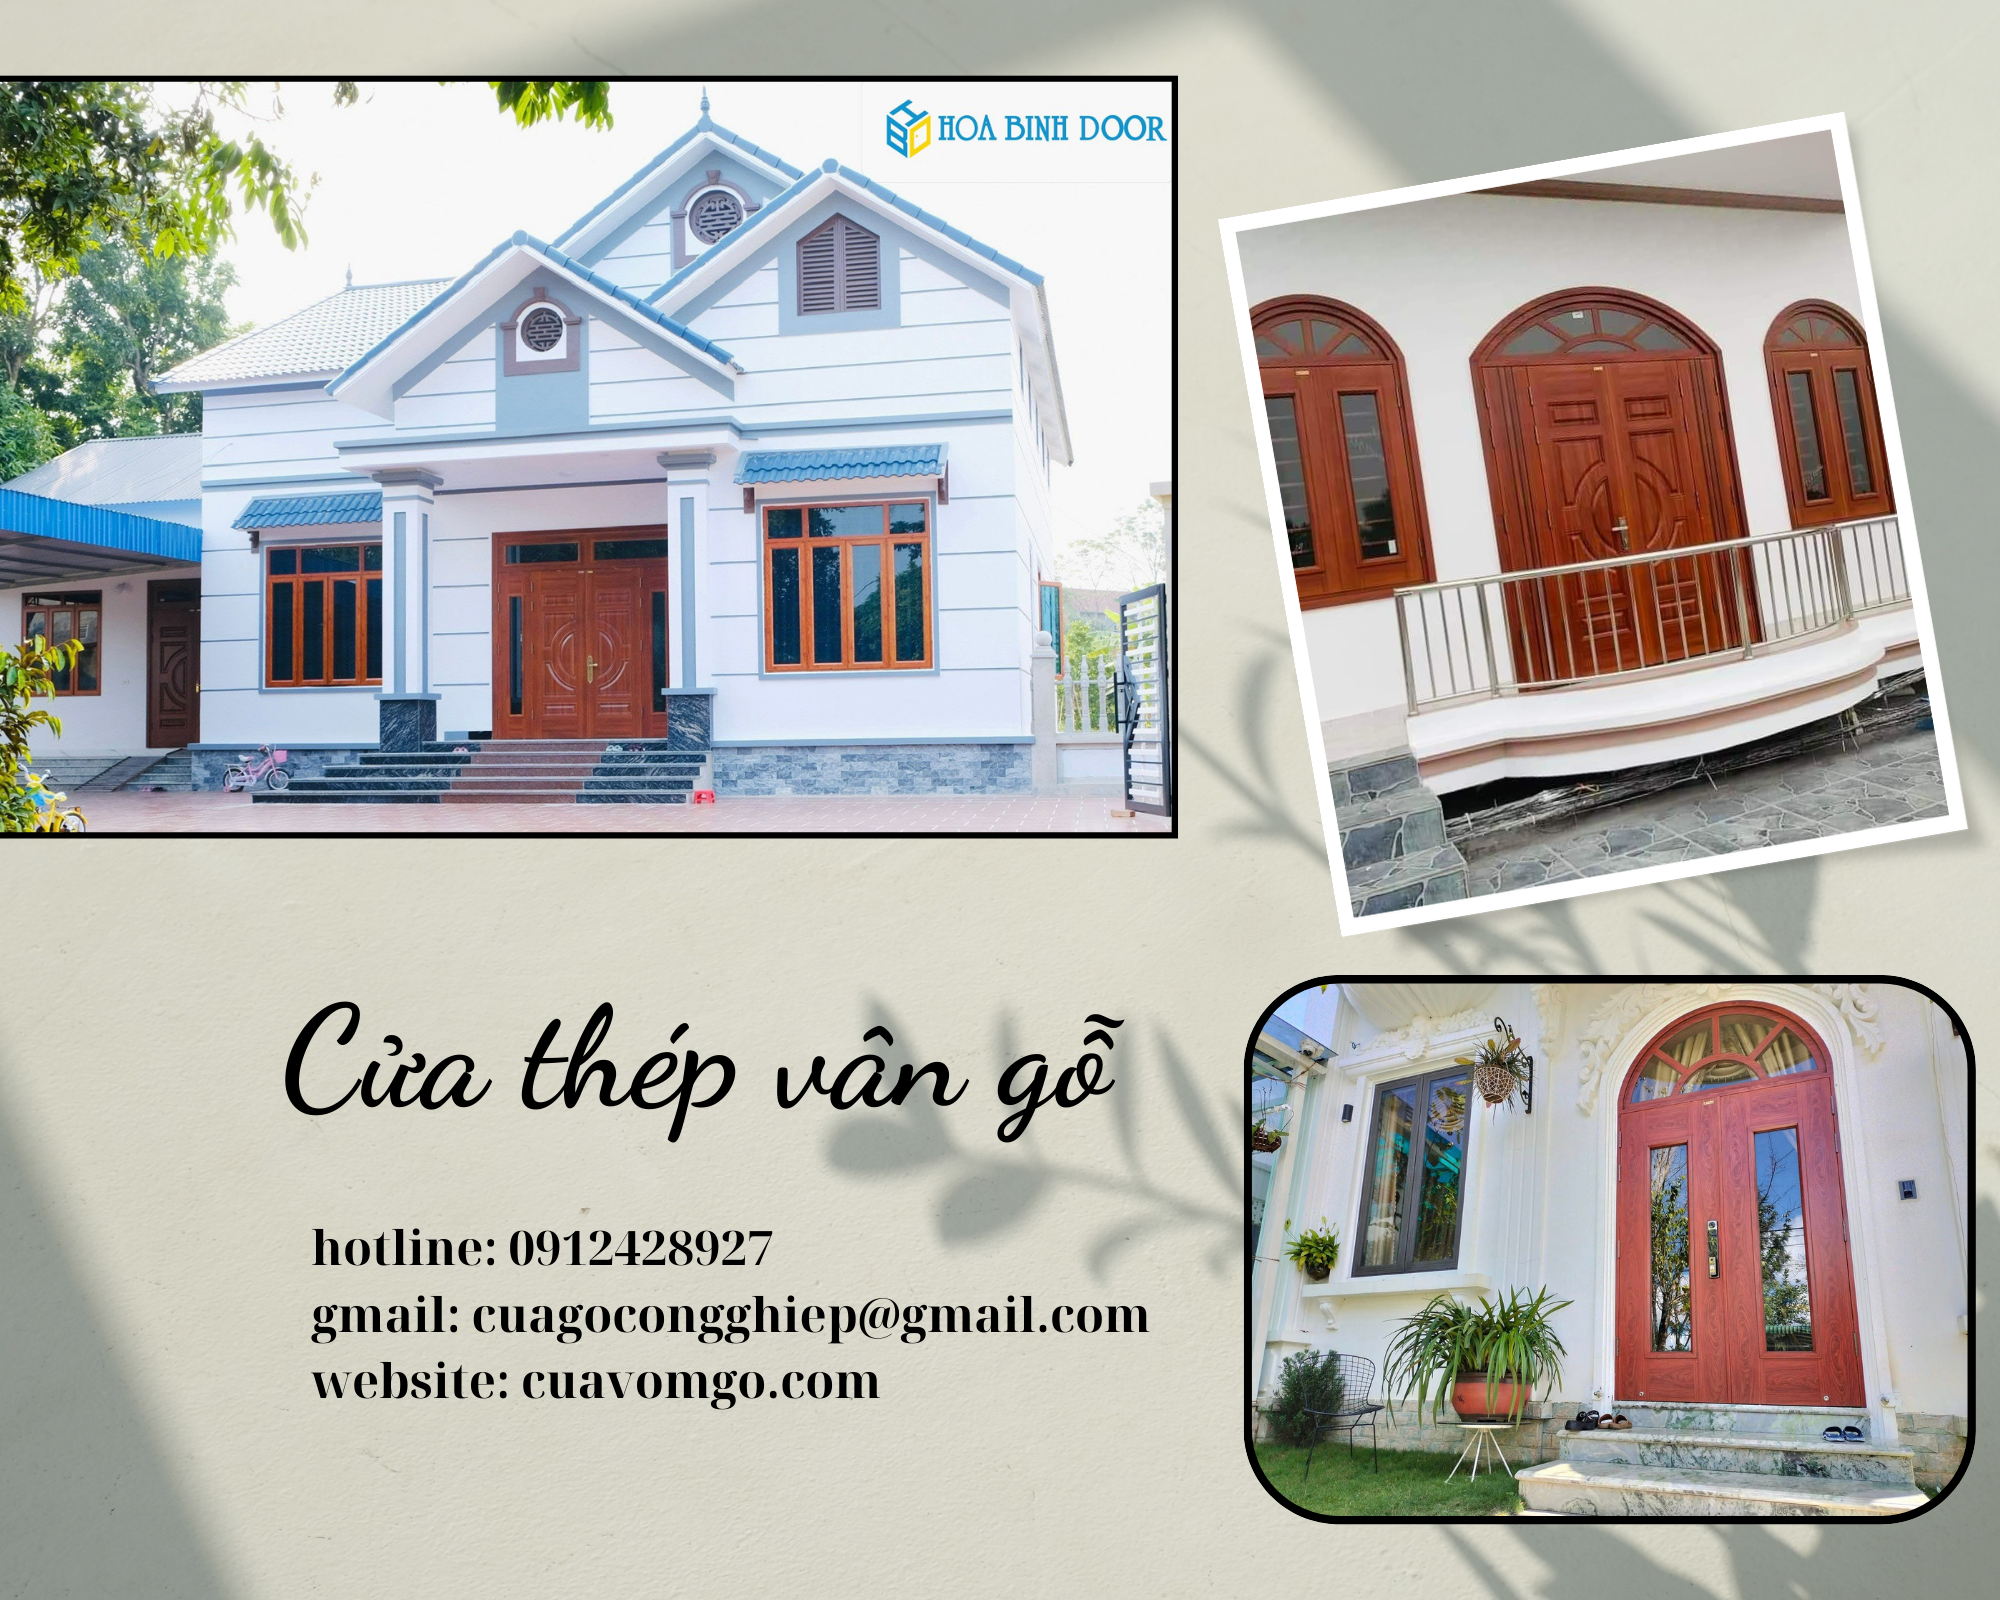 Giá cửa thép vân gỗ tại Tân Bình- cửa giá rẻ, bền và đẹp Nen-Do-Bong-Cau-Noi-Hay-Ve-Ky-Niem-Anh-Ghep-Nghe-Thuat